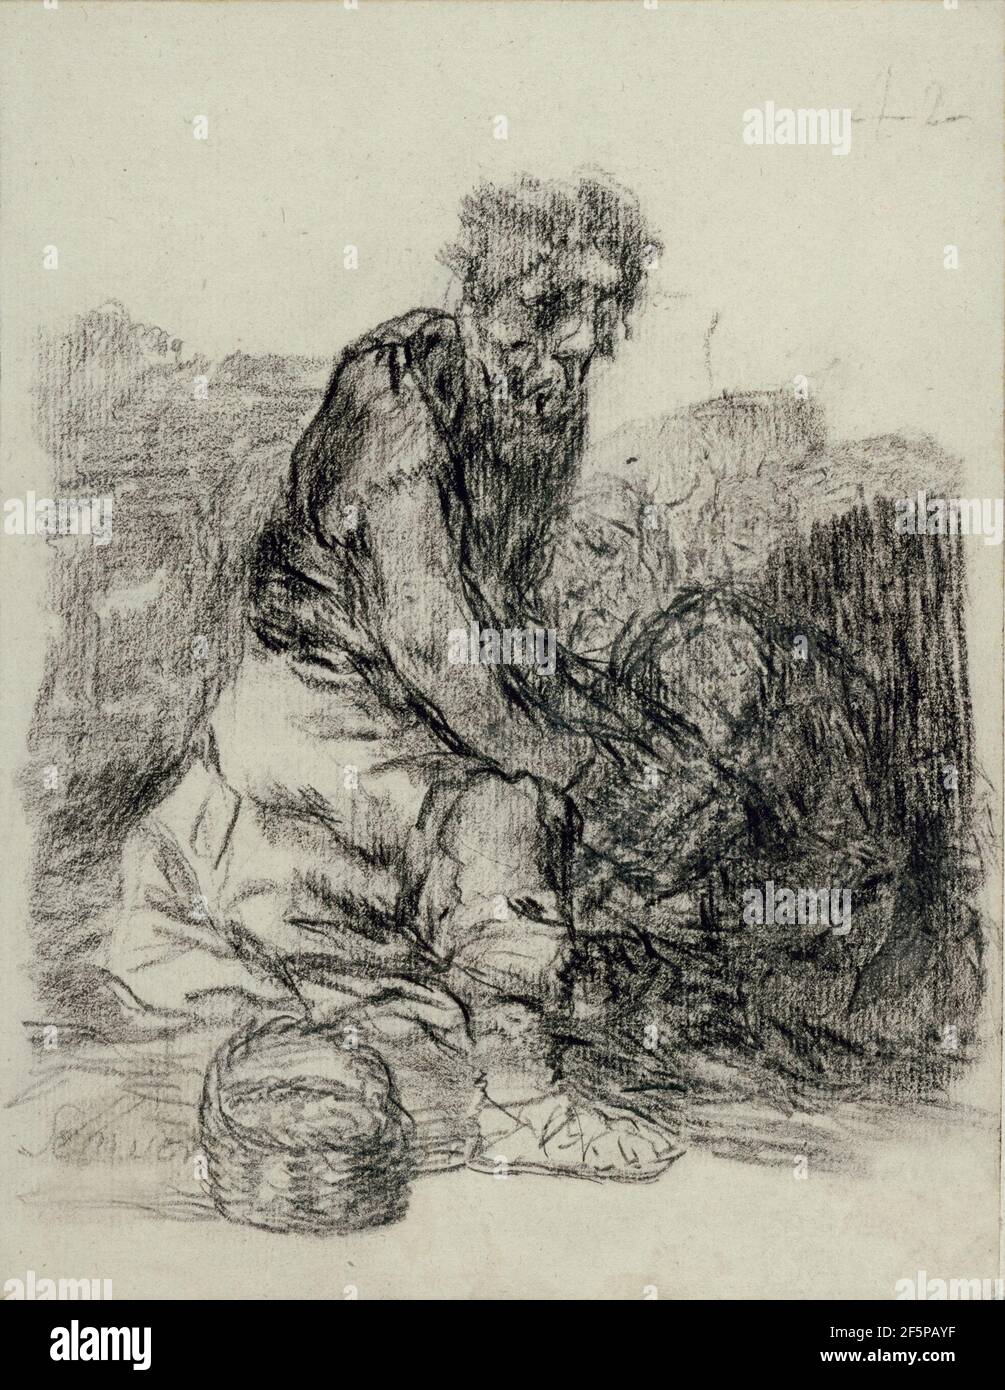 Están muriendo. Francisco José de Goya y Lucientes (Francisco de Goya) (Español, 1746 - 1828) Foto de stock